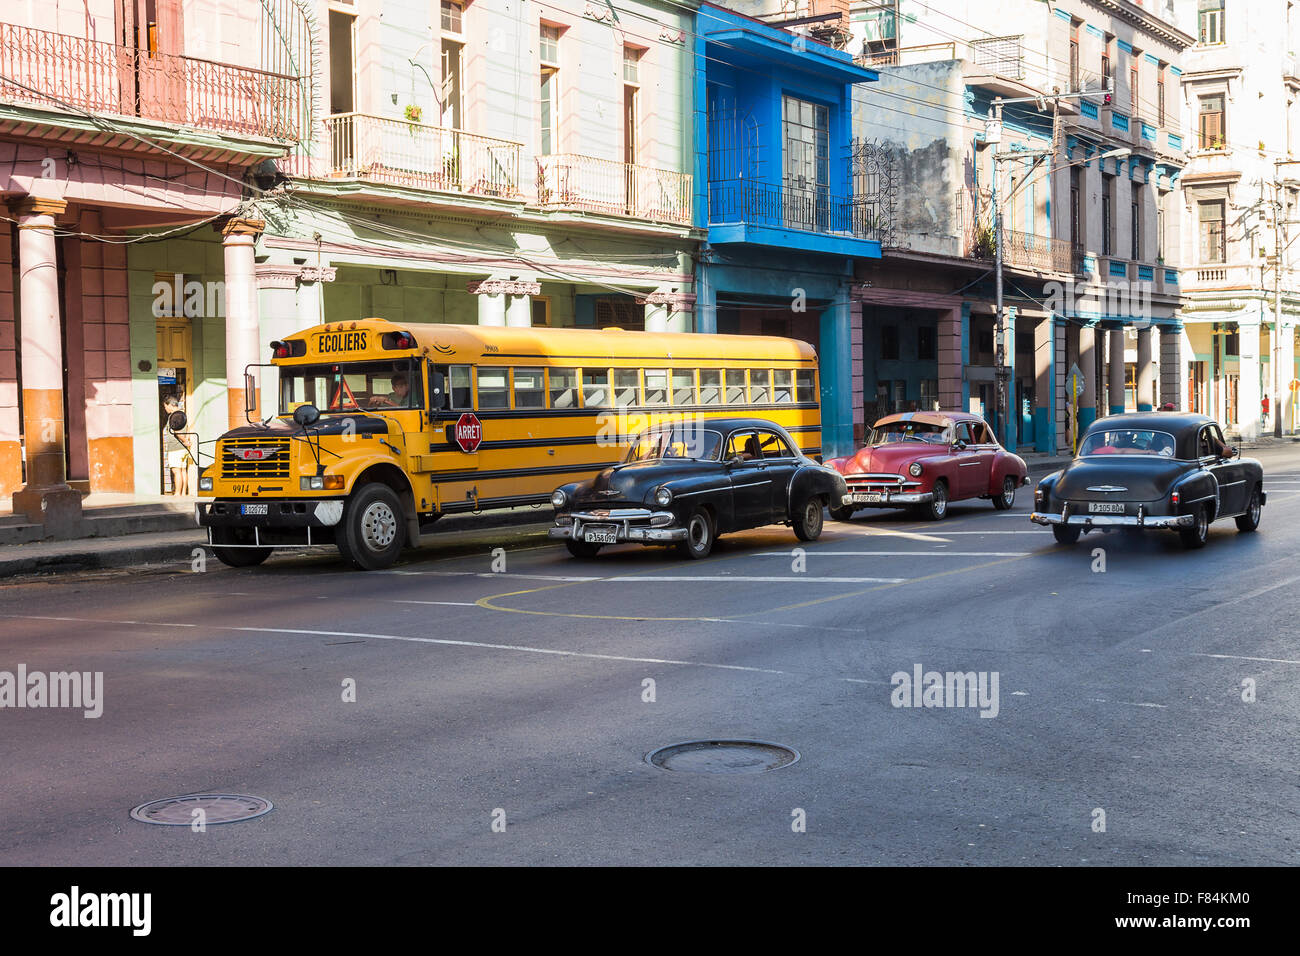 La dimensione del giallo scuolabus può essere visto qui contro alcune vecchie auto nel centro di Havana. Foto Stock